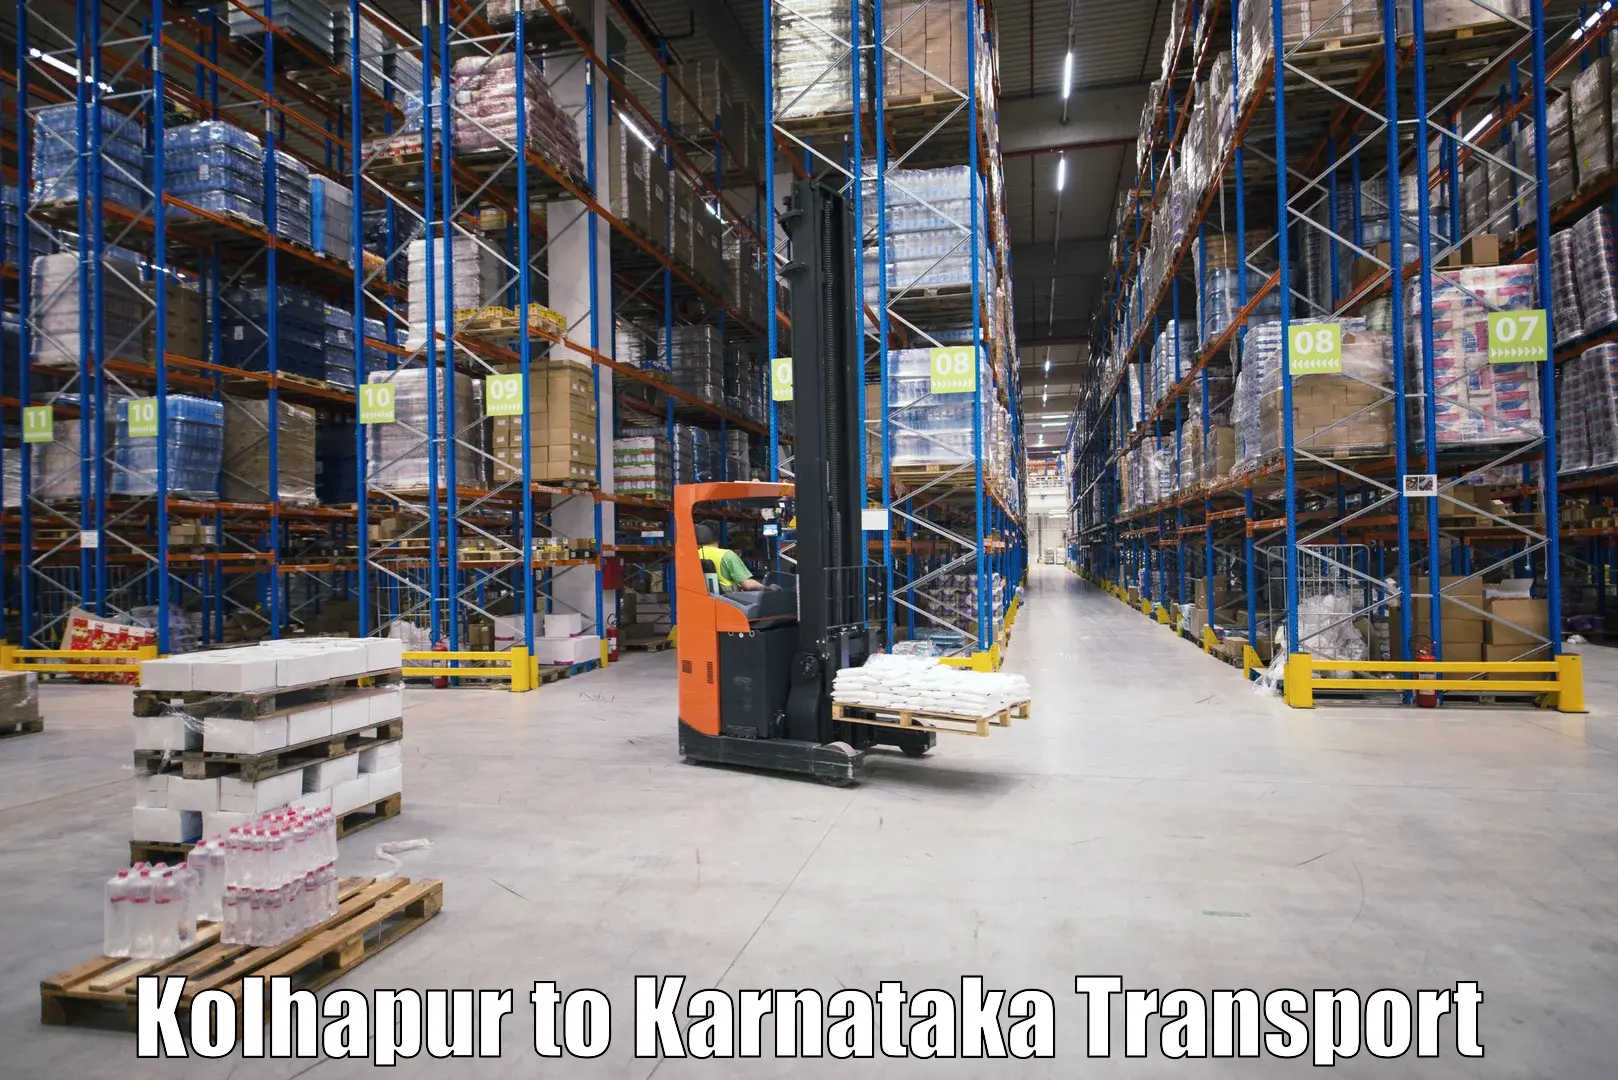 Pick up transport service Kolhapur to Madikeri